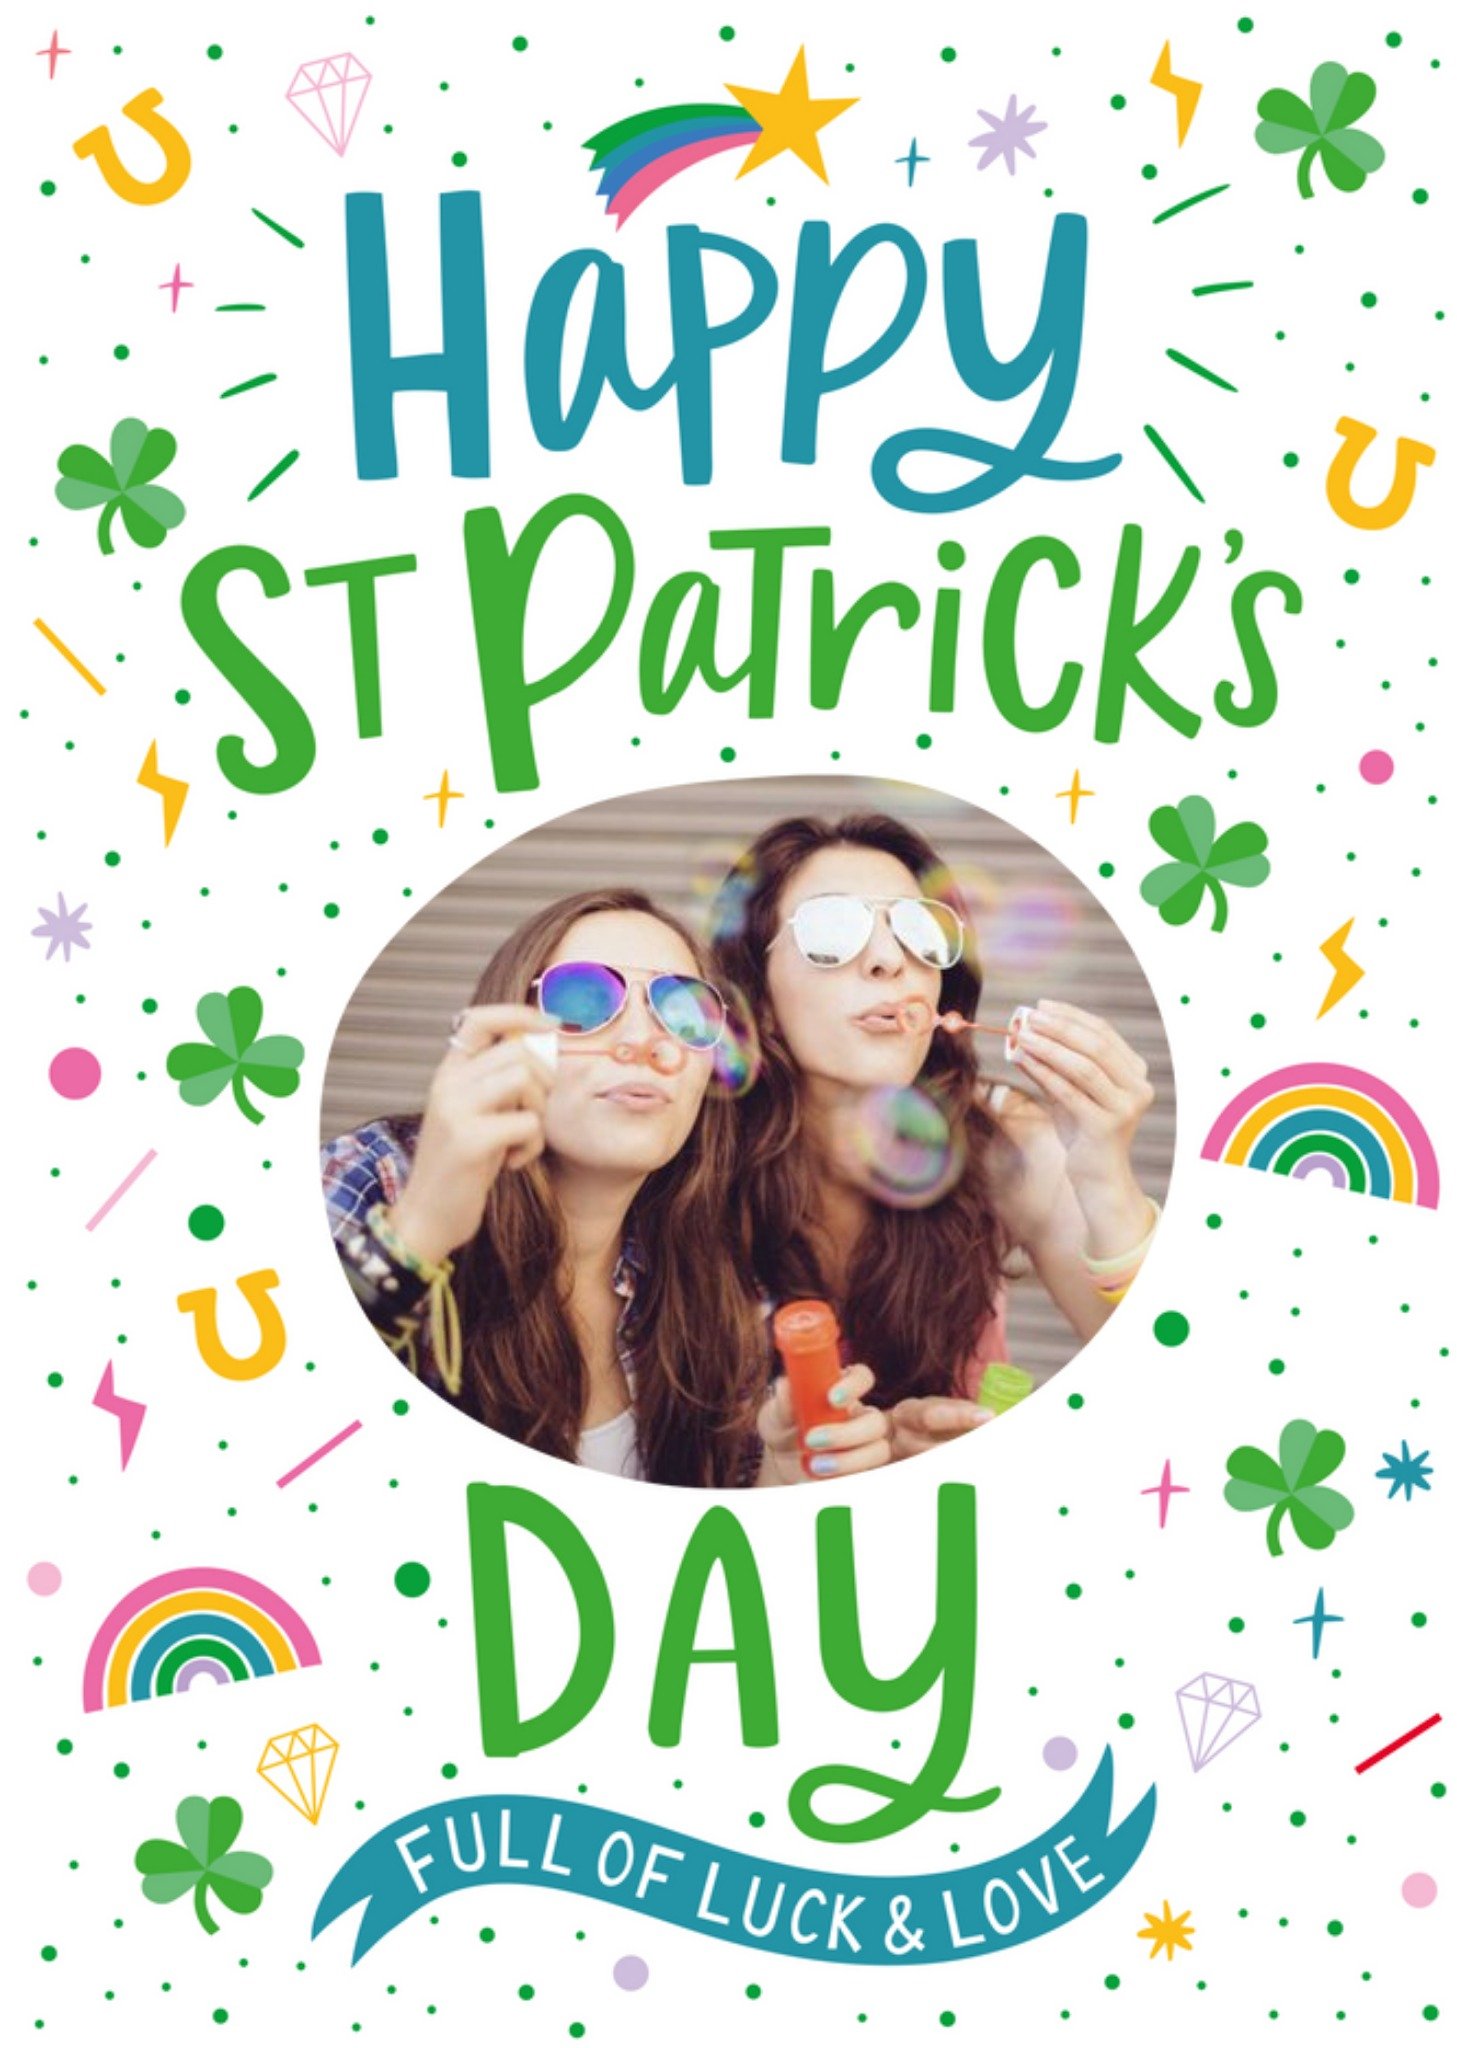 Moonpig Illustration Of Shamrocks Horseshoes And Rainbows Saint Patrick's Day Photo Upload Card Ecar